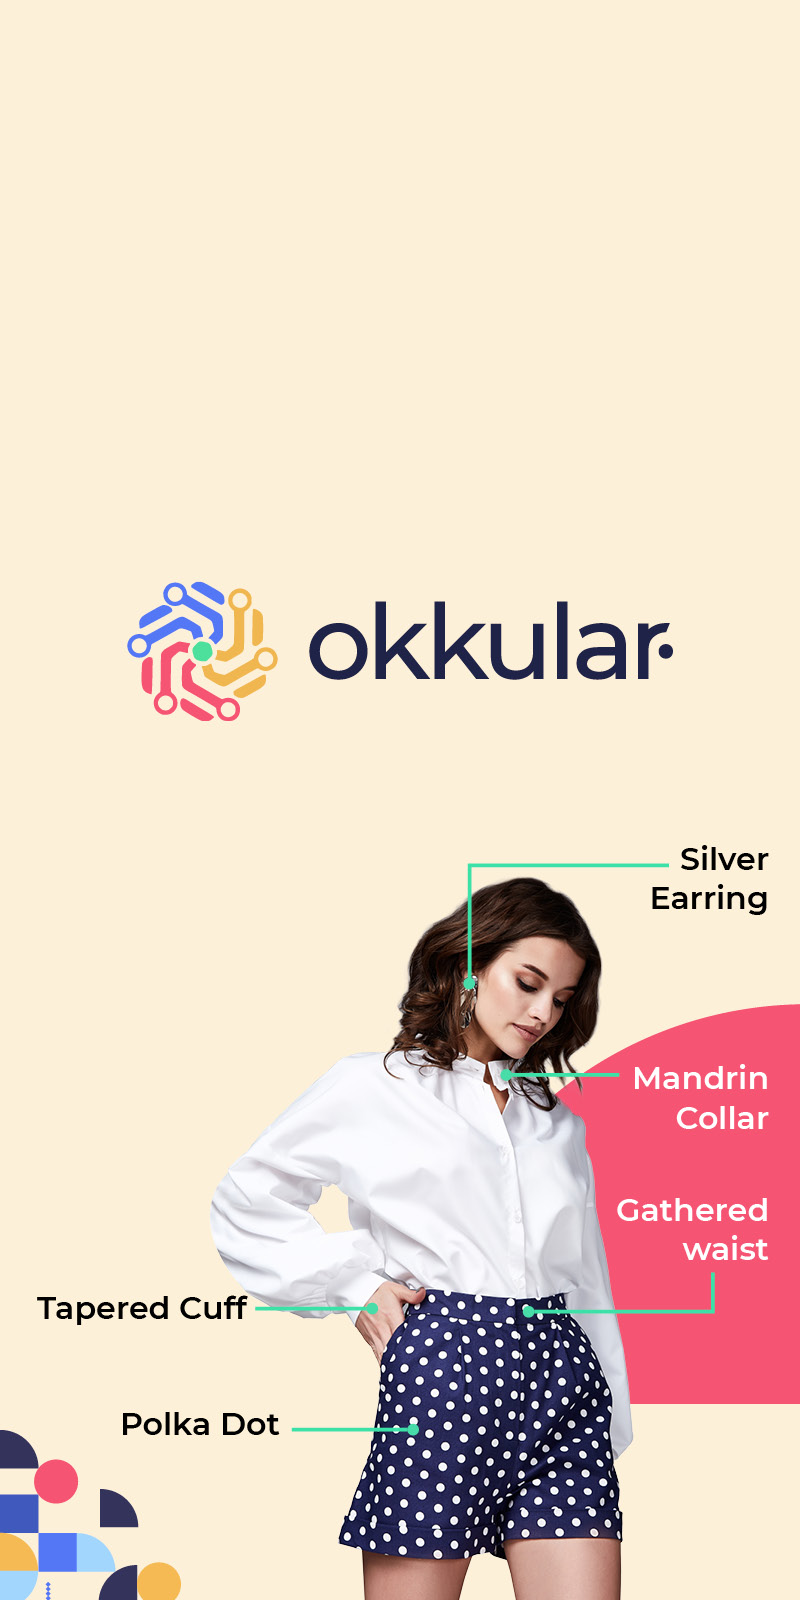 Okkular Digital Campaign by Think Creative